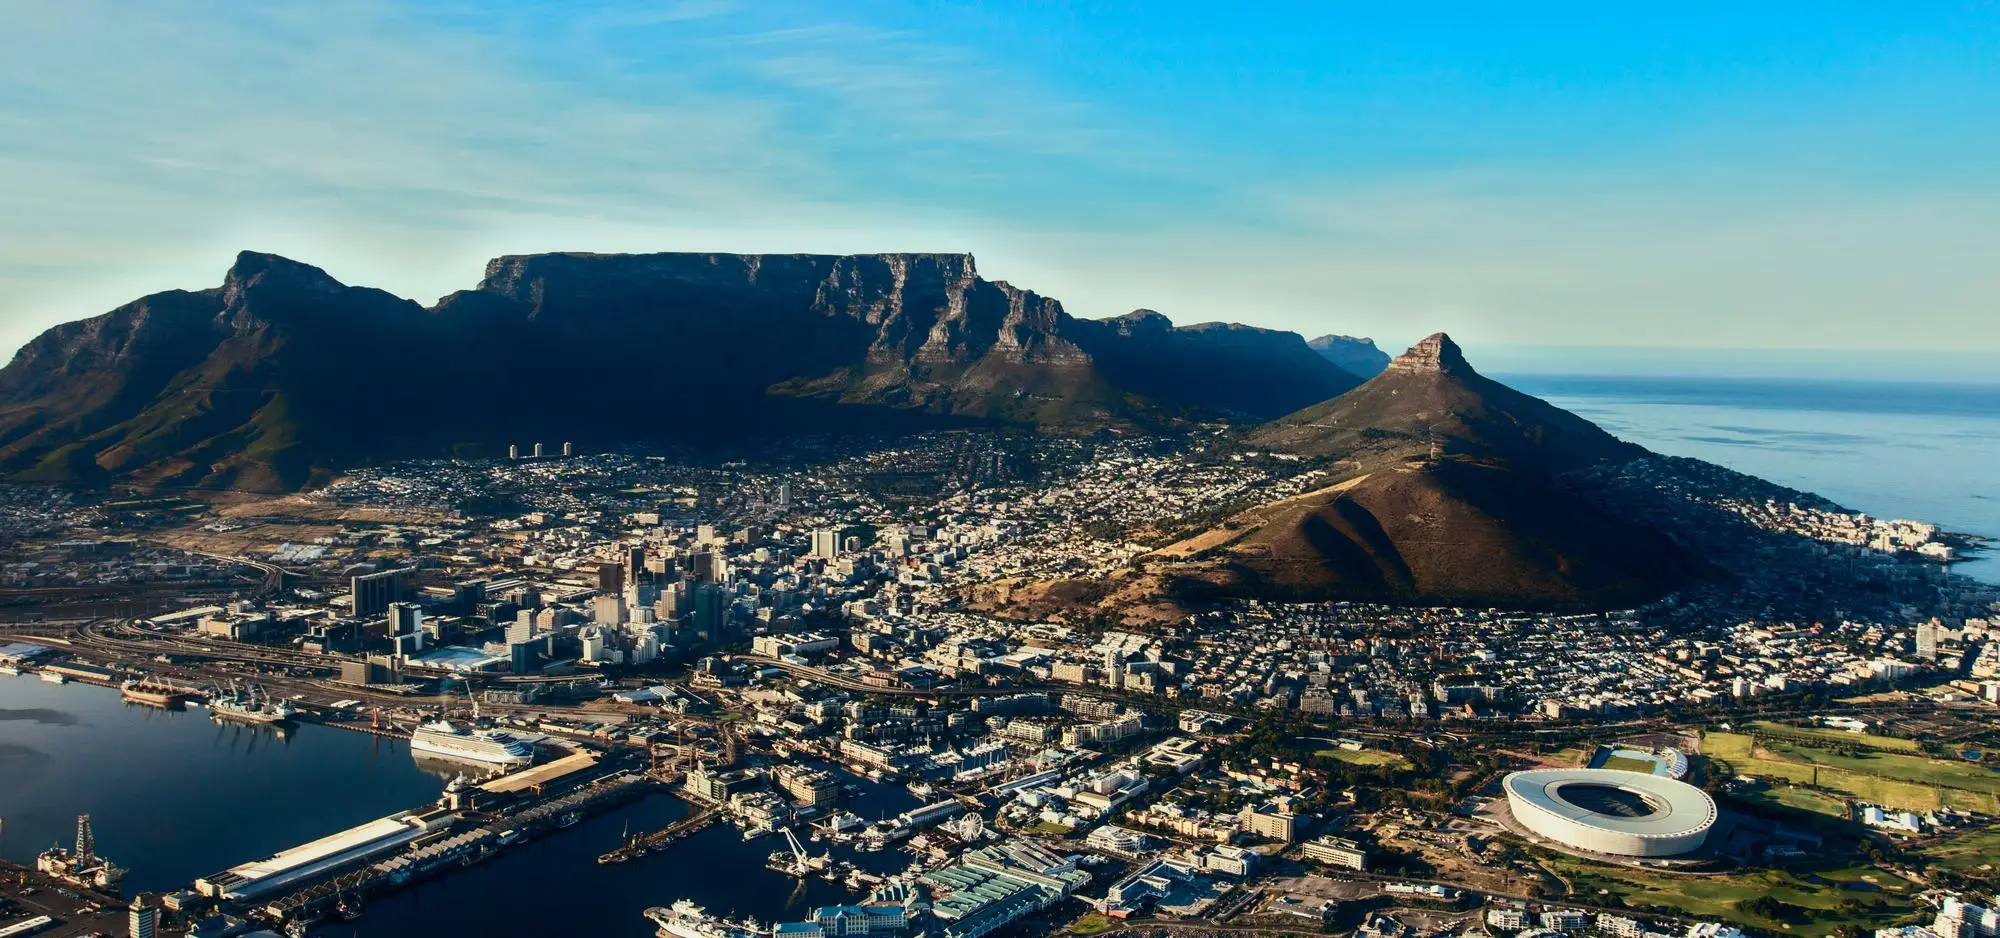 Cose da vedere a Cape Town - Cape Town e Table Mountain in Sudafrica